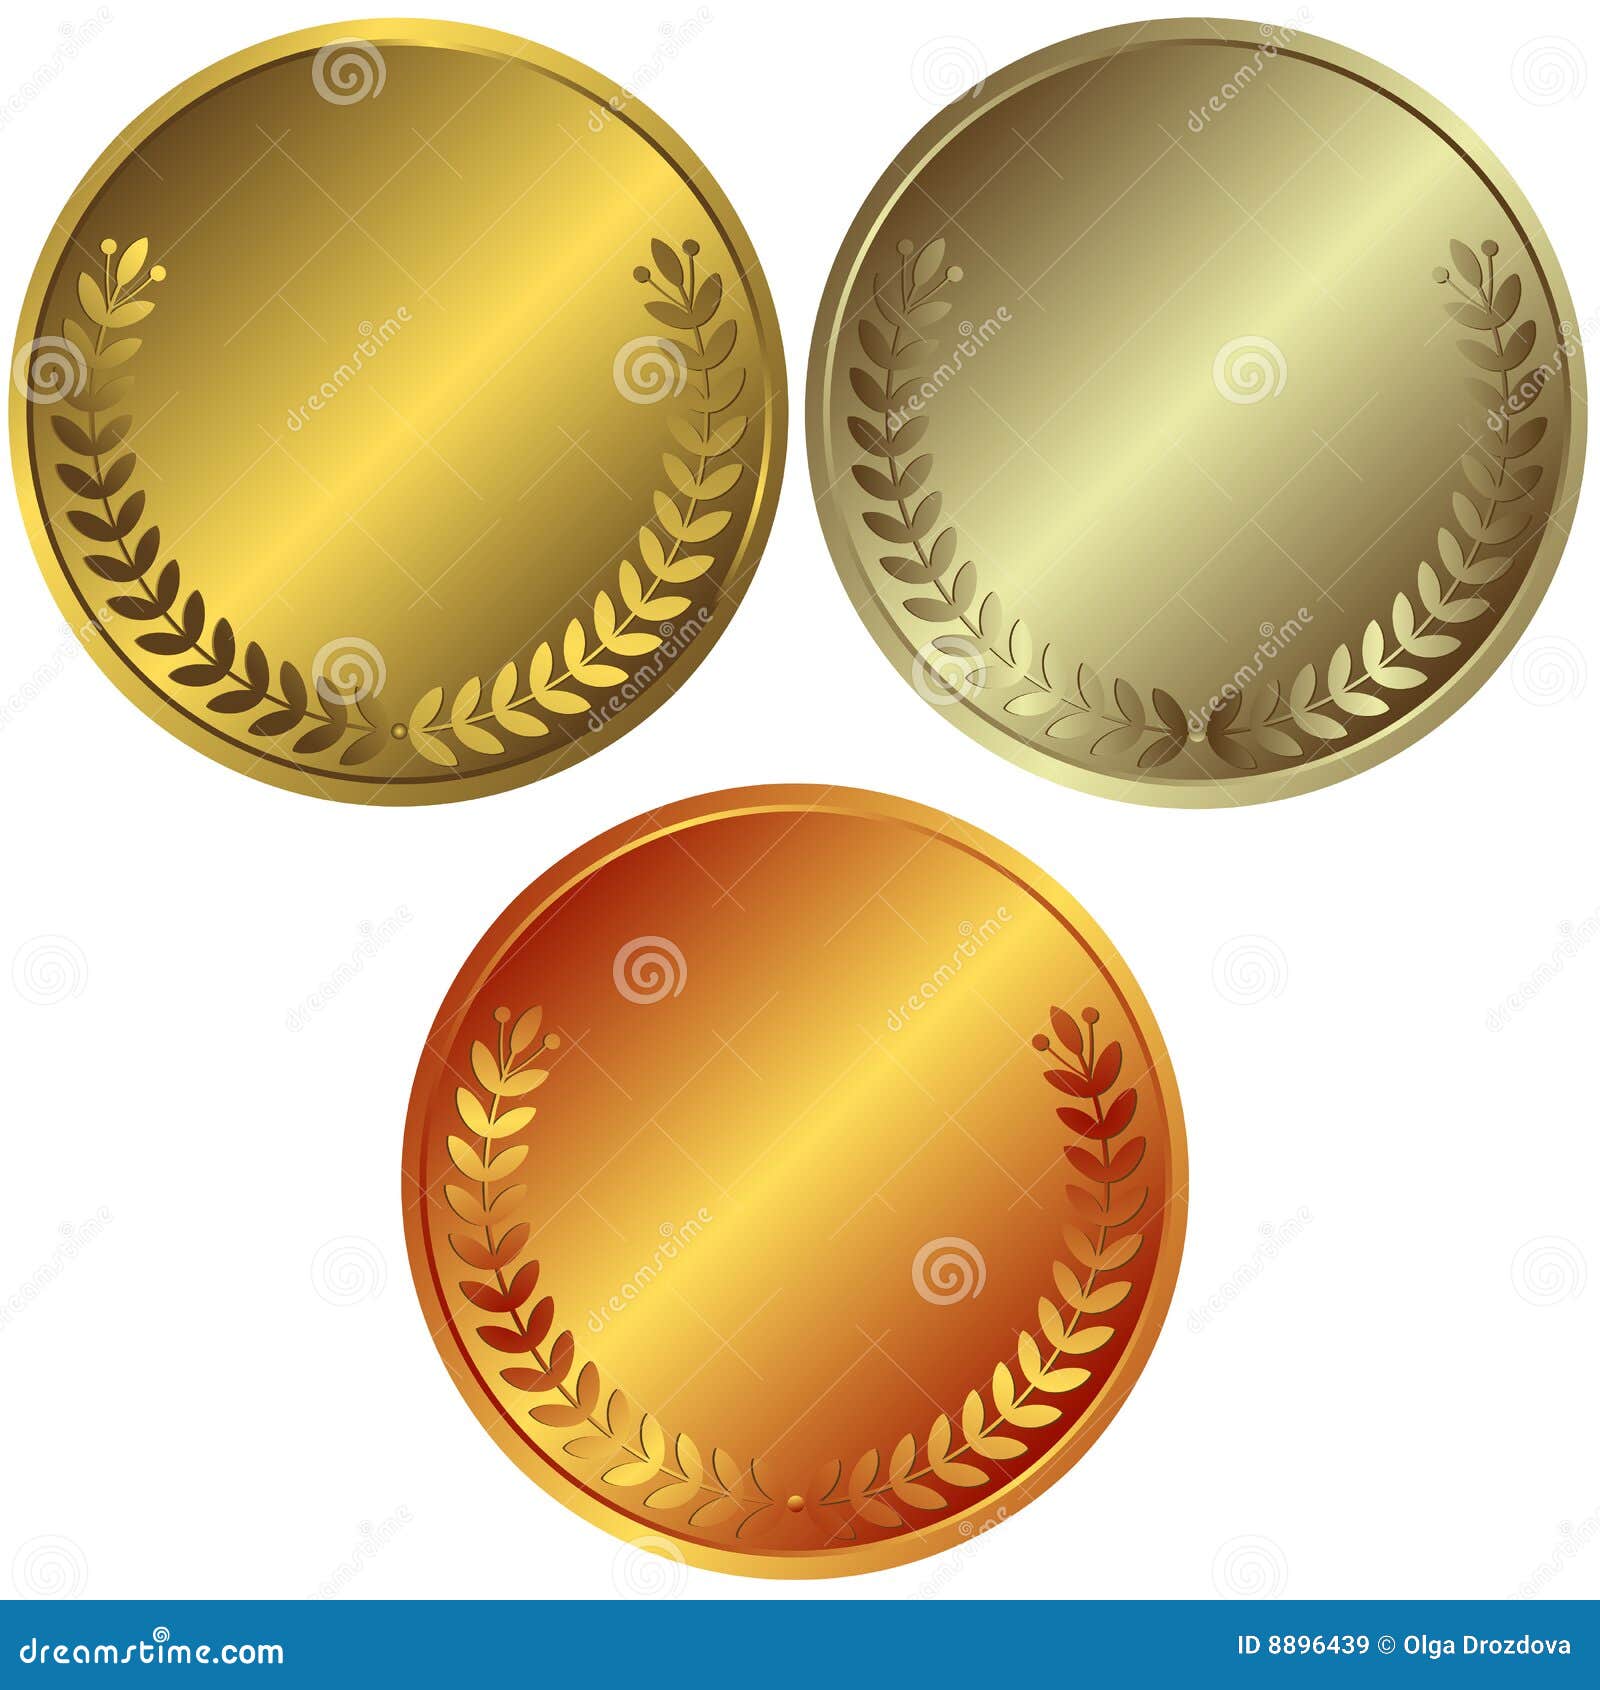 1 золотая 2 серебряные 2 бронзовые